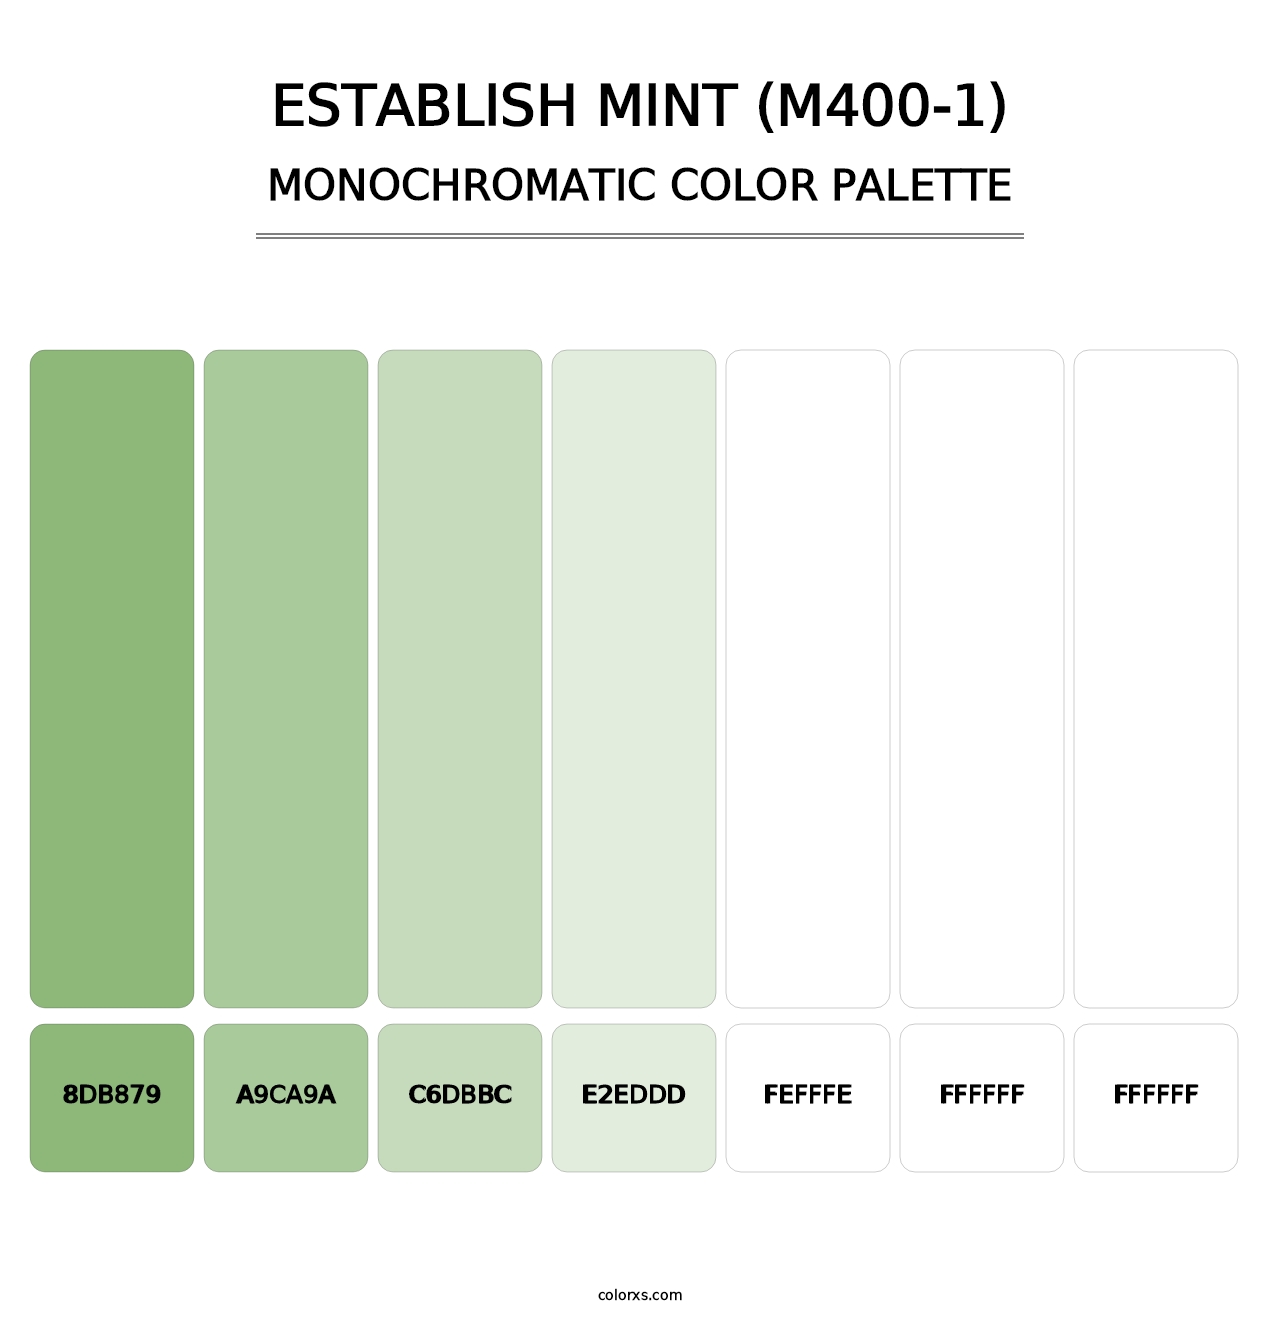 Establish Mint (M400-1) - Monochromatic Color Palette